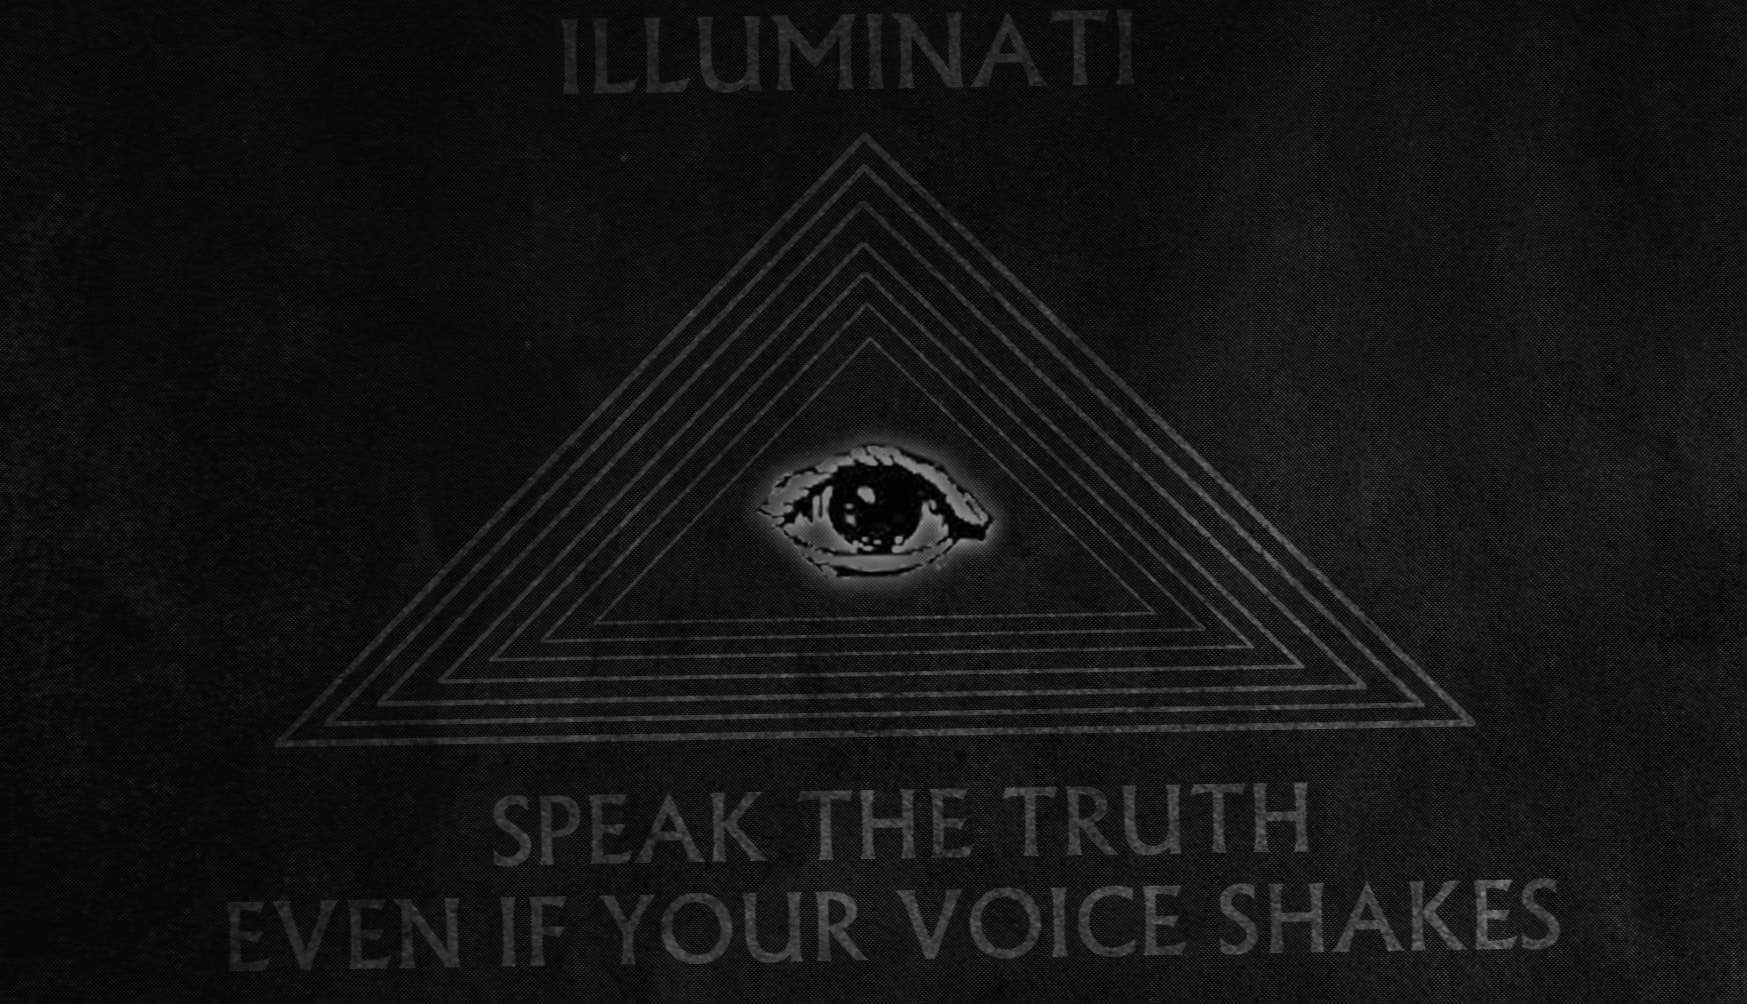 Illuminati at 2048 x 2048 iPad size wallpapers HD quality